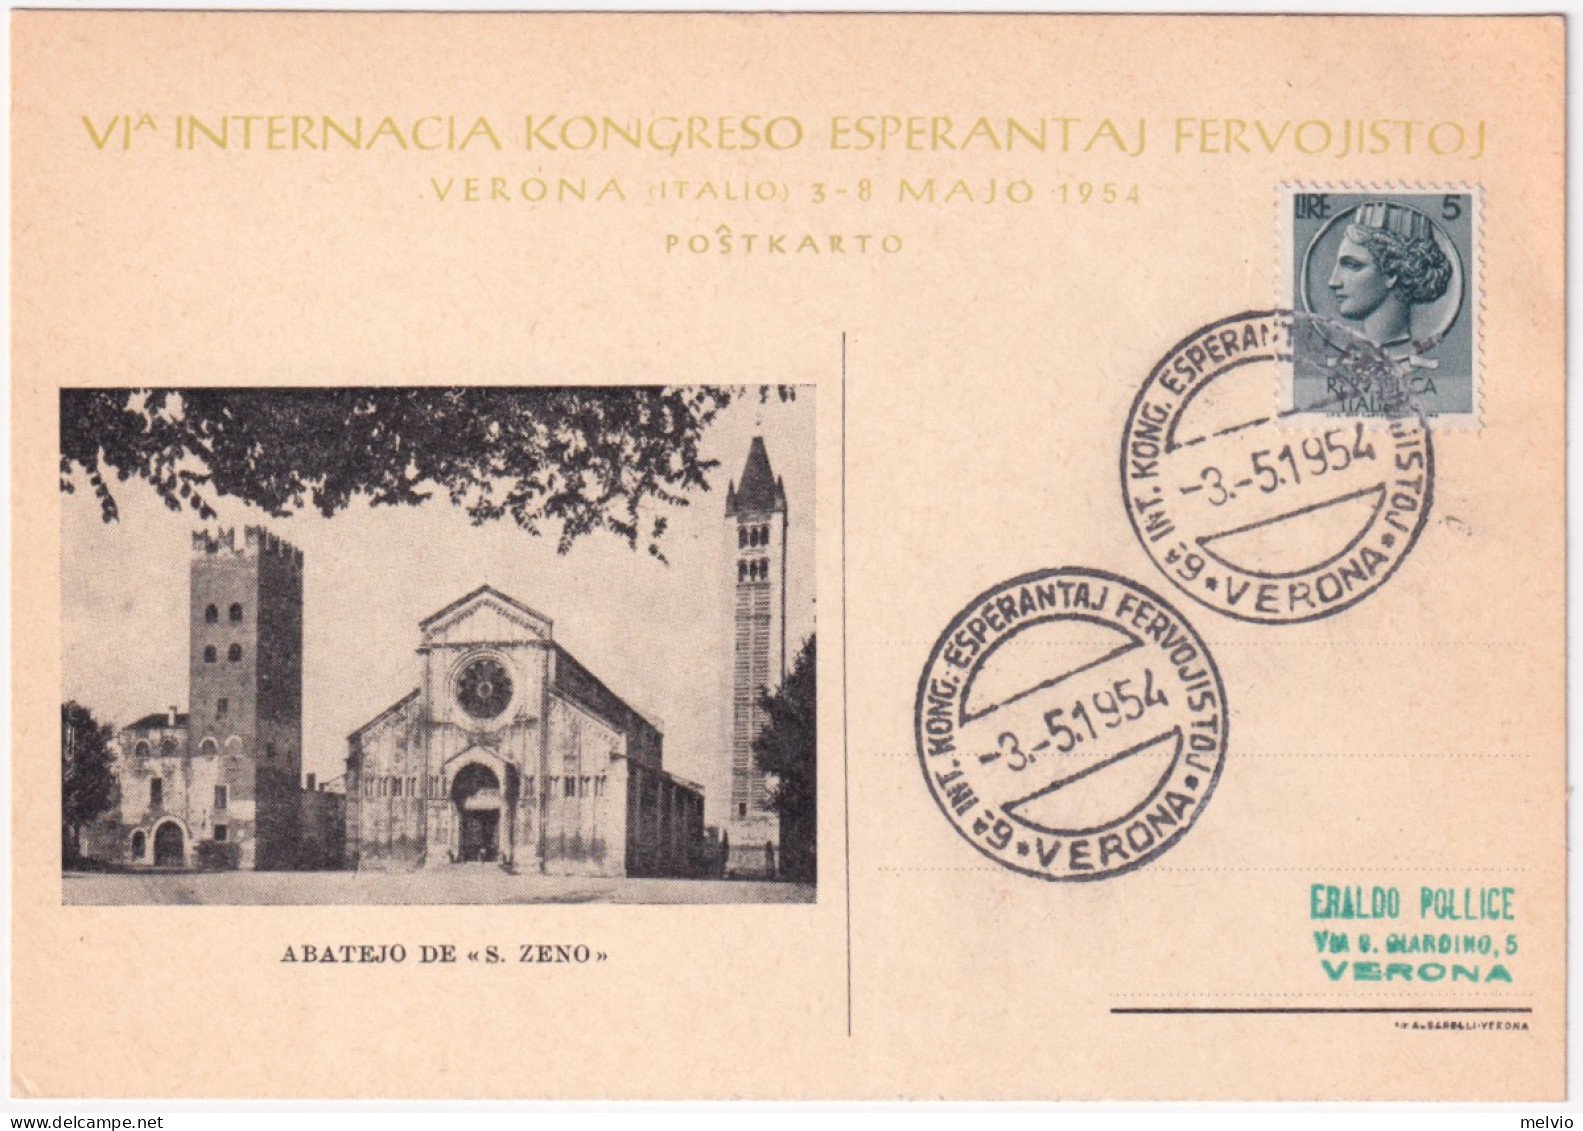 1954-VERONA 6 INT. KONG. ESPERANTAJ FERVOJISTOJ (3.5) Annullo Speciale Su Cartol - Esperanto